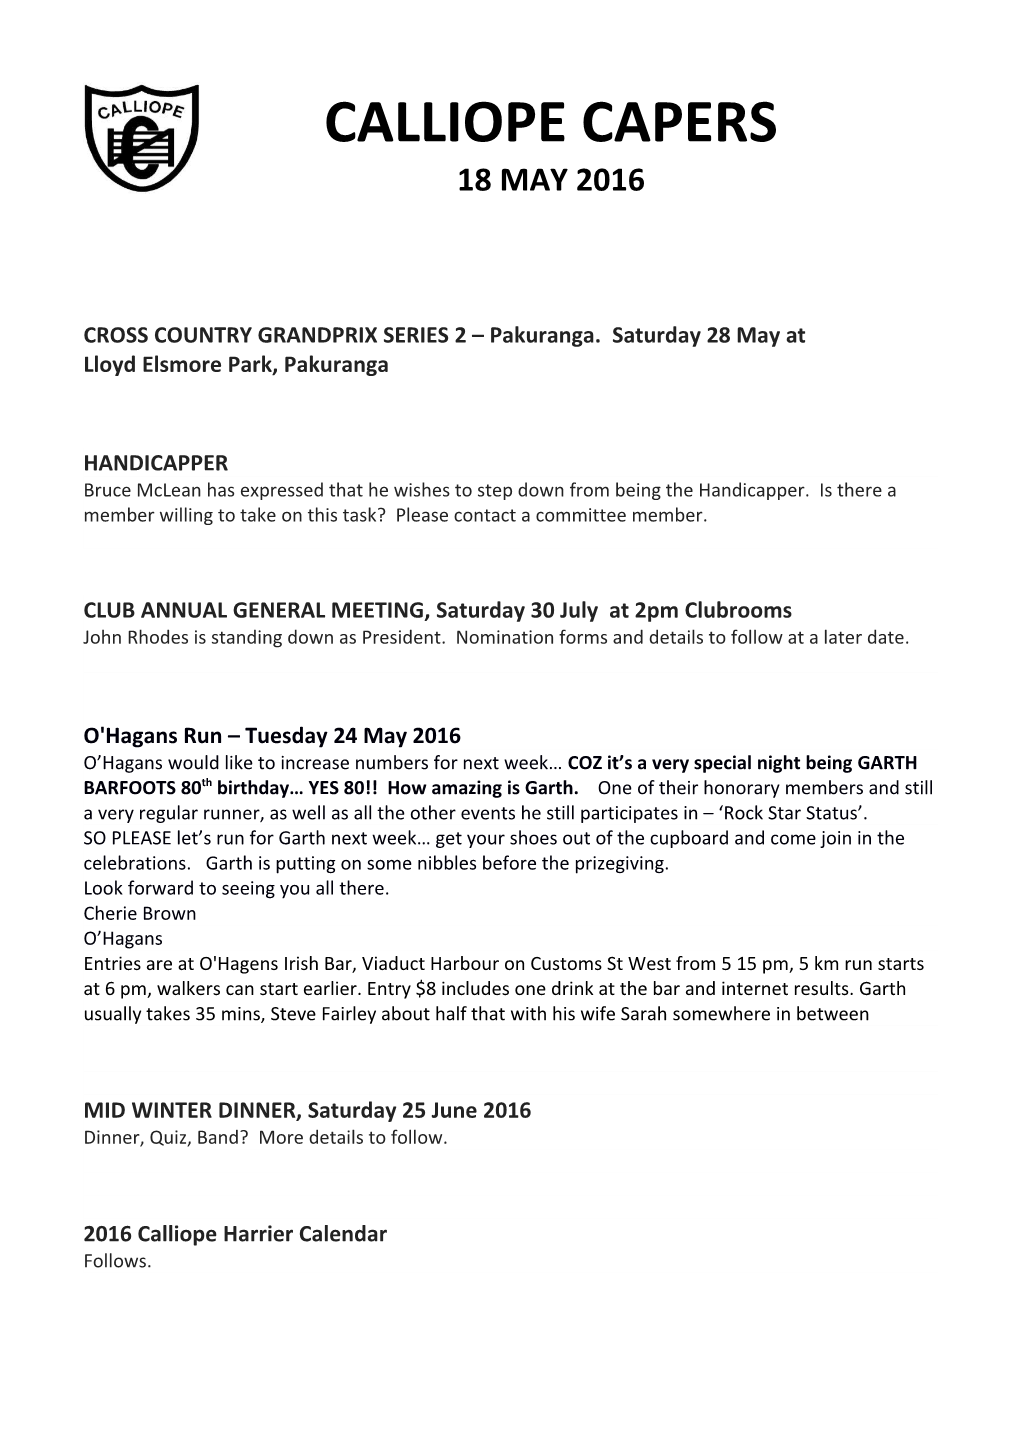 CROSS COUNTRY GRANDPRIX SERIES 2 Pakuranga. Saturday 28 May At